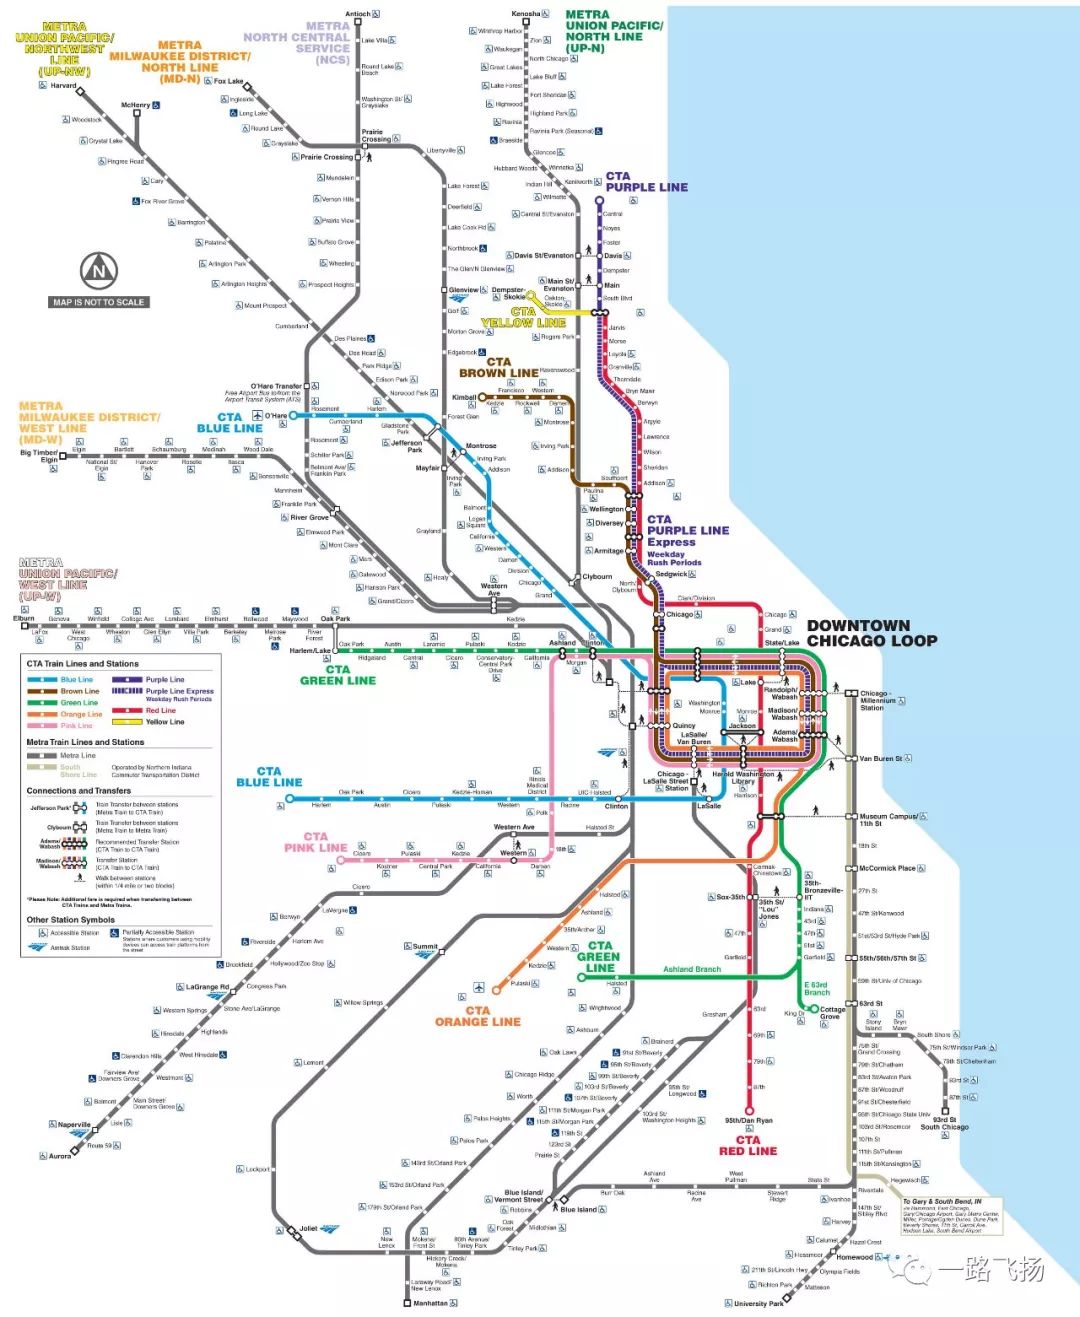 芝加哥奥黑尔国际机场距离芝加哥市中心约25公里,地铁蓝线(blue line)